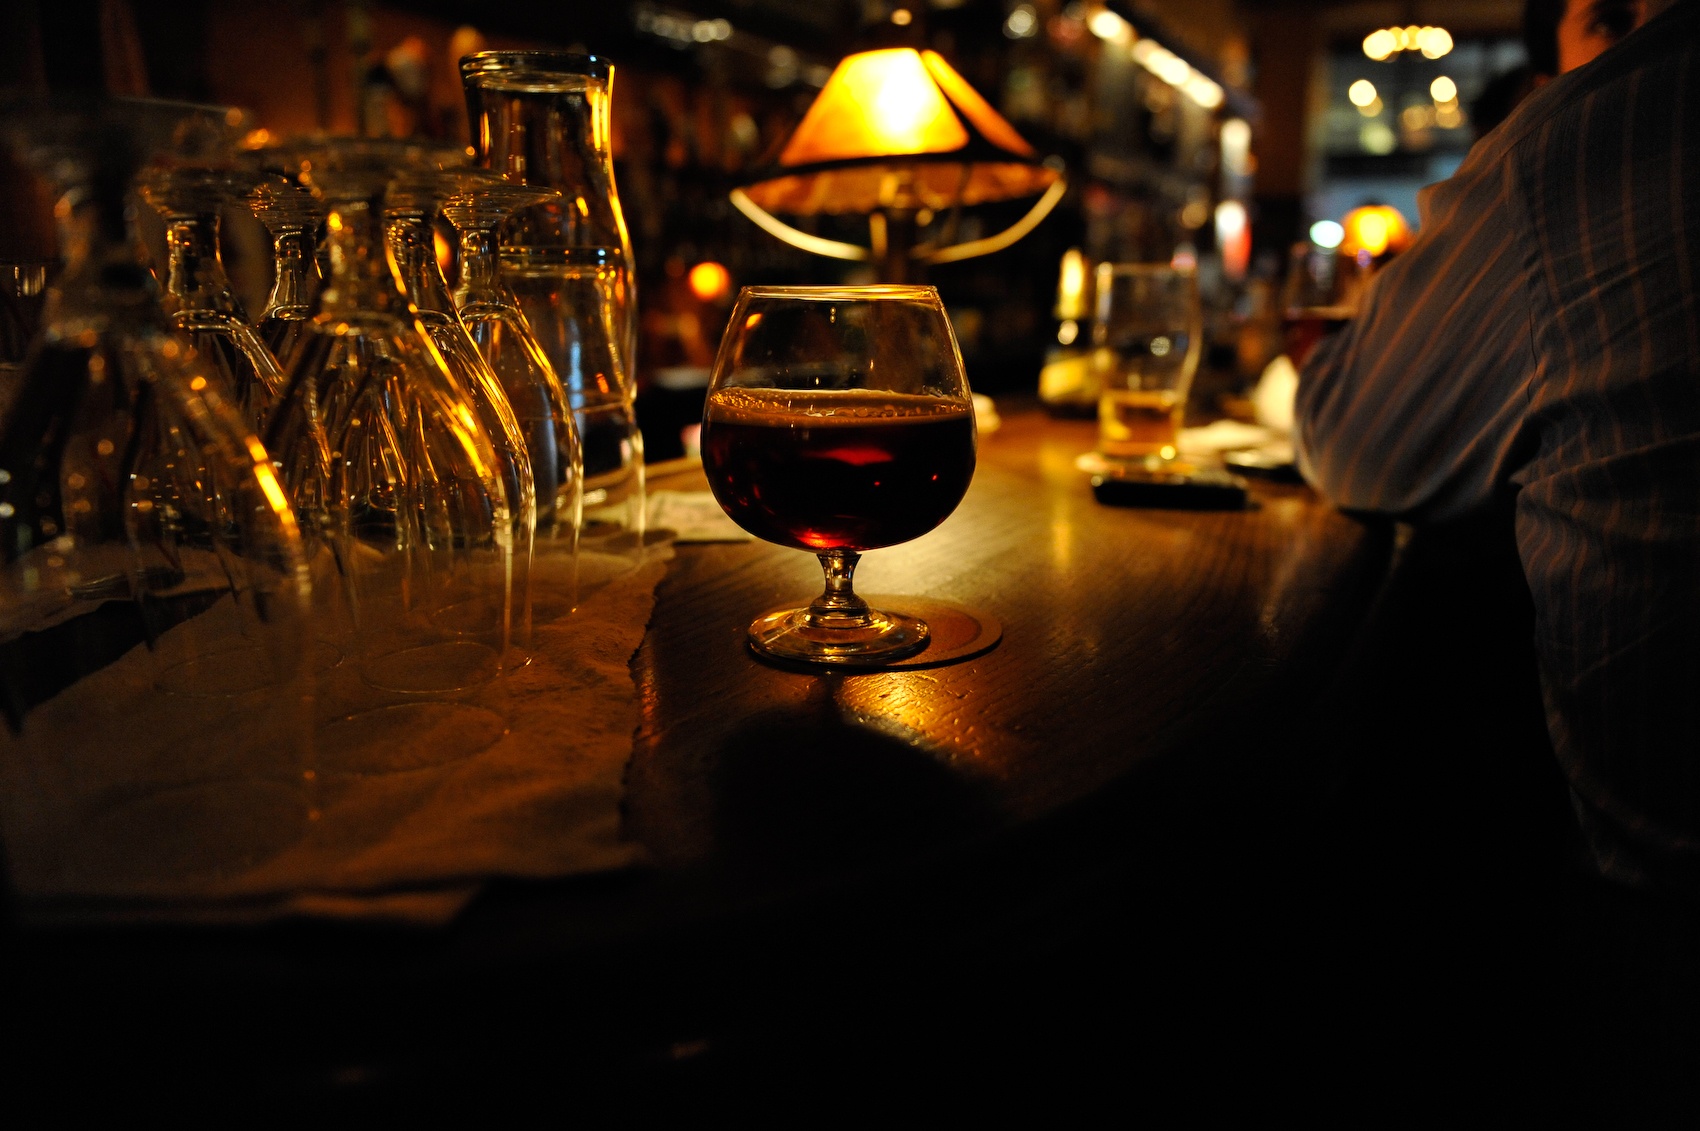 Cervejas de inverno têm mais álcool e ajudam a esquentar o corpo - Foto: Jazz Guy/Flickr